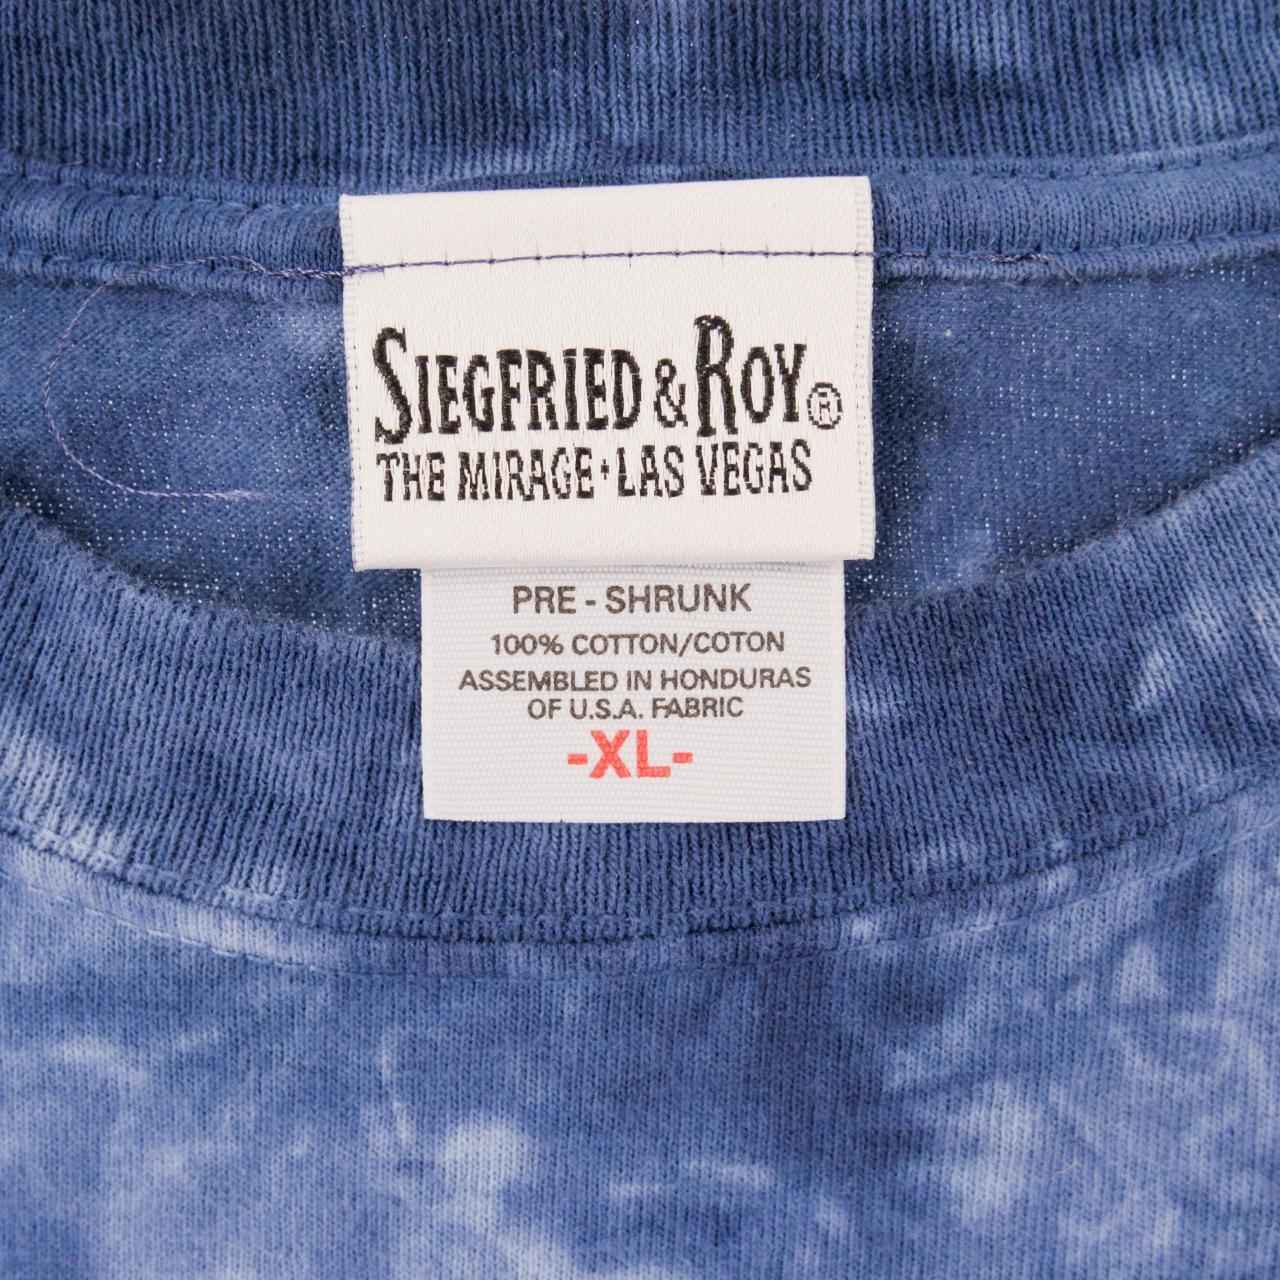 Vintage Siegfried & Roy Tiger Tye Dye T Shirt Size L - Known Source